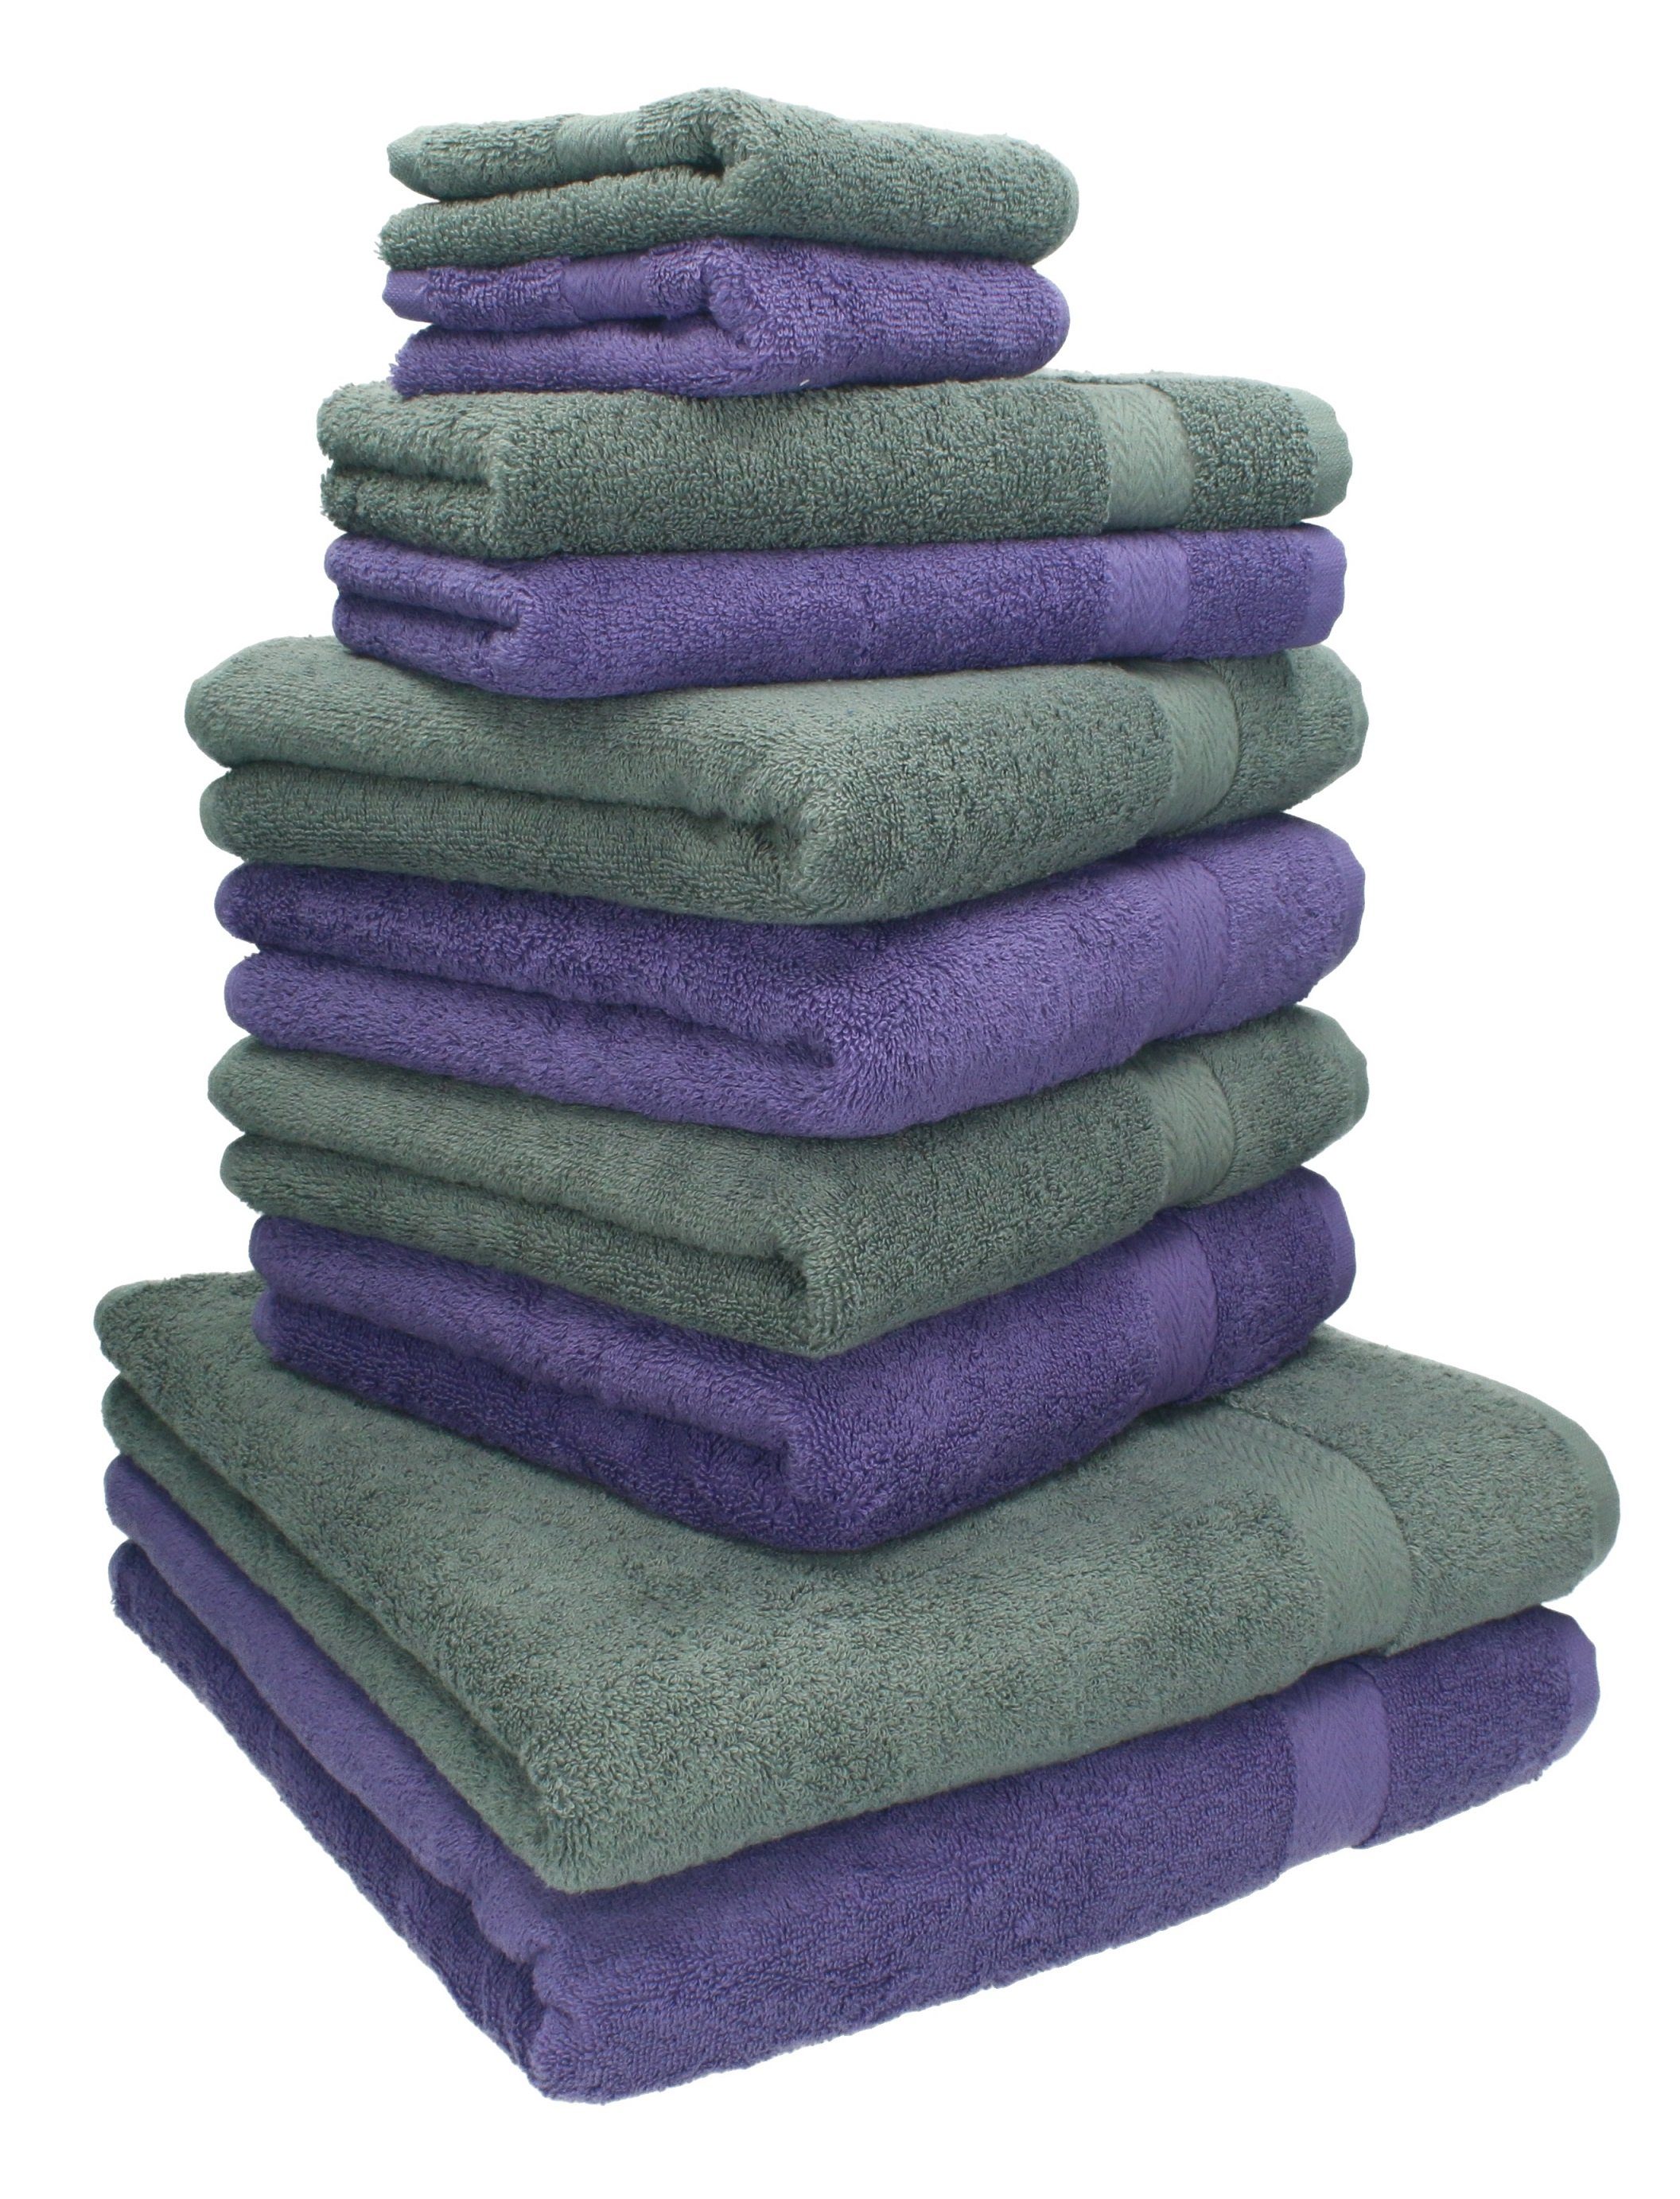 Betz Handtuch Set Handtuch-Set und Farbe 100% Baumwolle Classic 10-TLG. anthrazit, lila